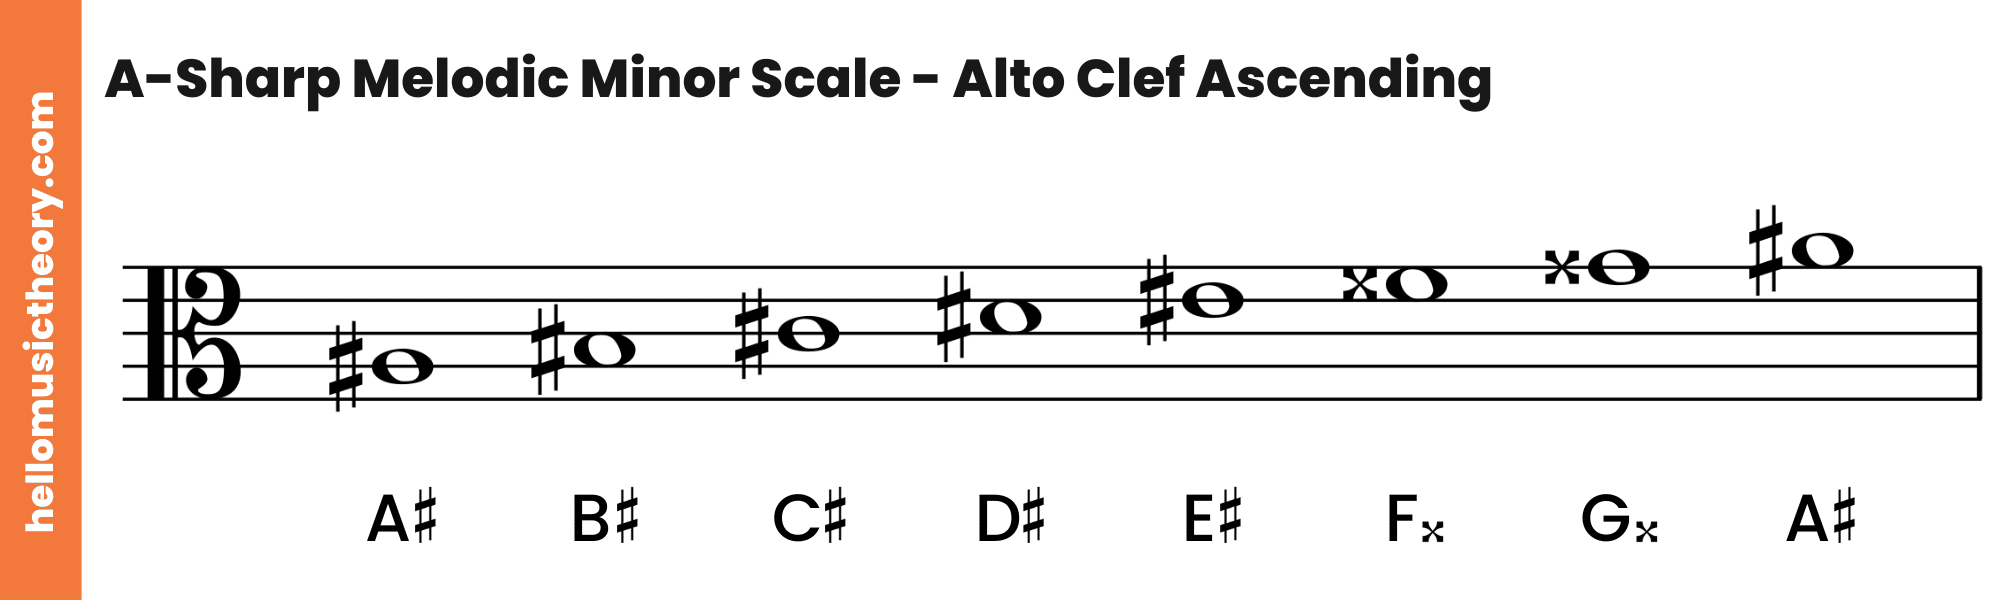 A-Sharp Melodic Minor Scale Alto Clef Ascending